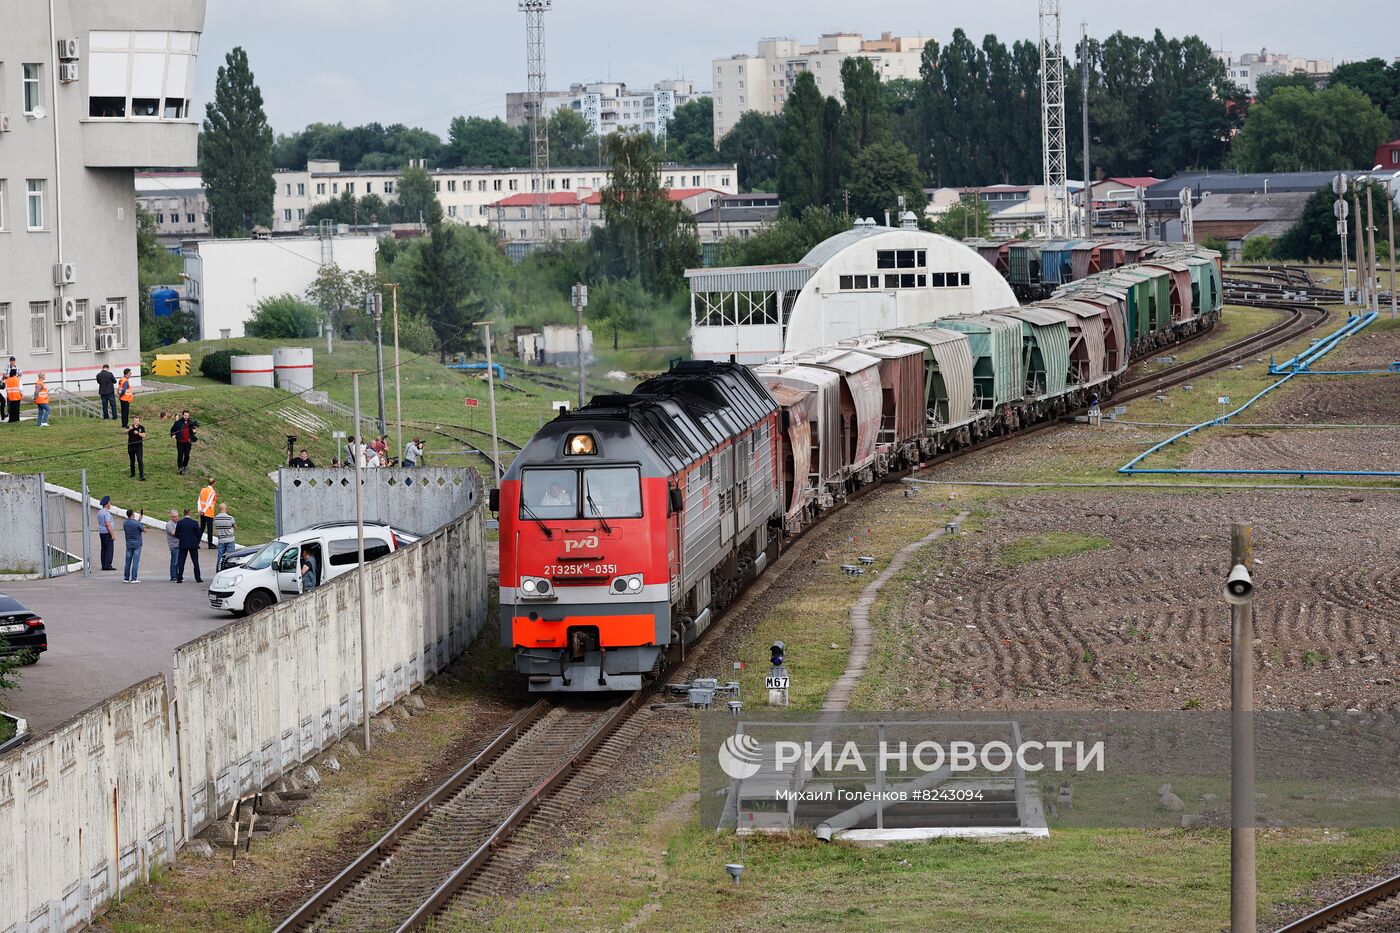 Первый поезд с цементом прибыл в Калининград через Литву